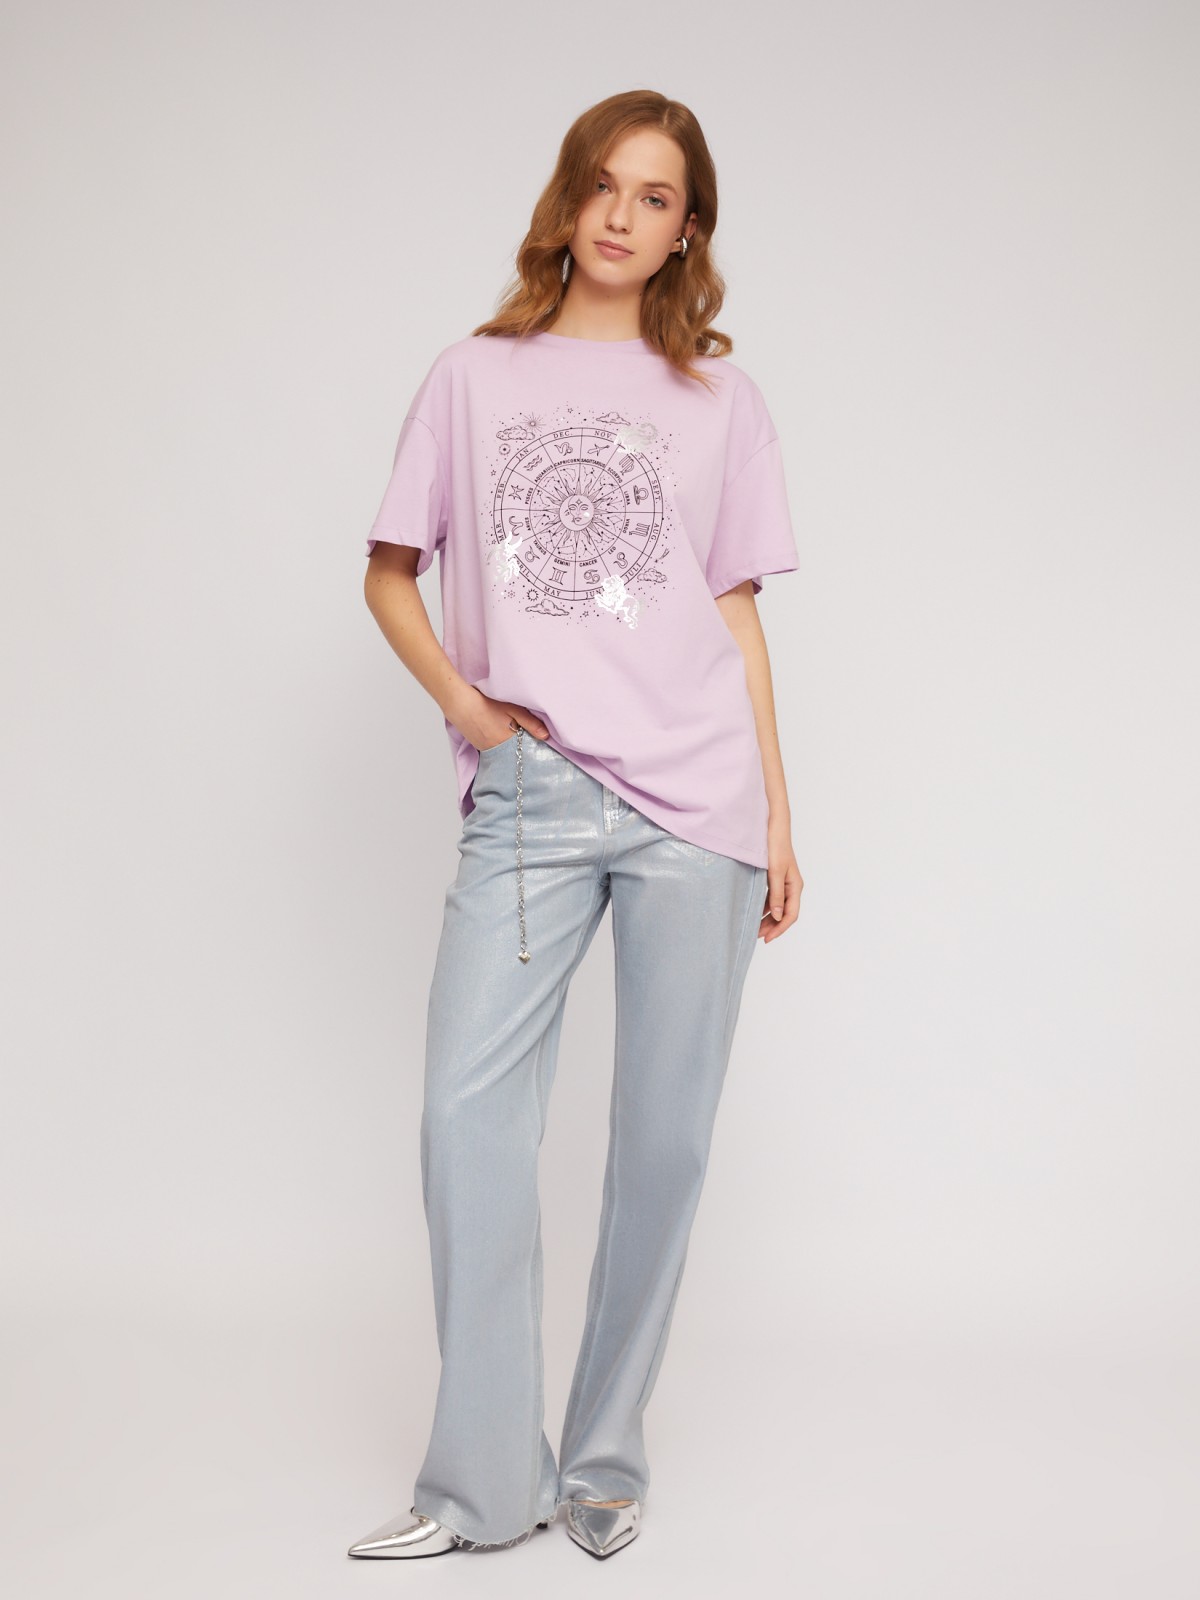 Трикотажная футболка из хлопка с принтом zolla N2424320W183, цвет лиловый, размер XS - фото 2